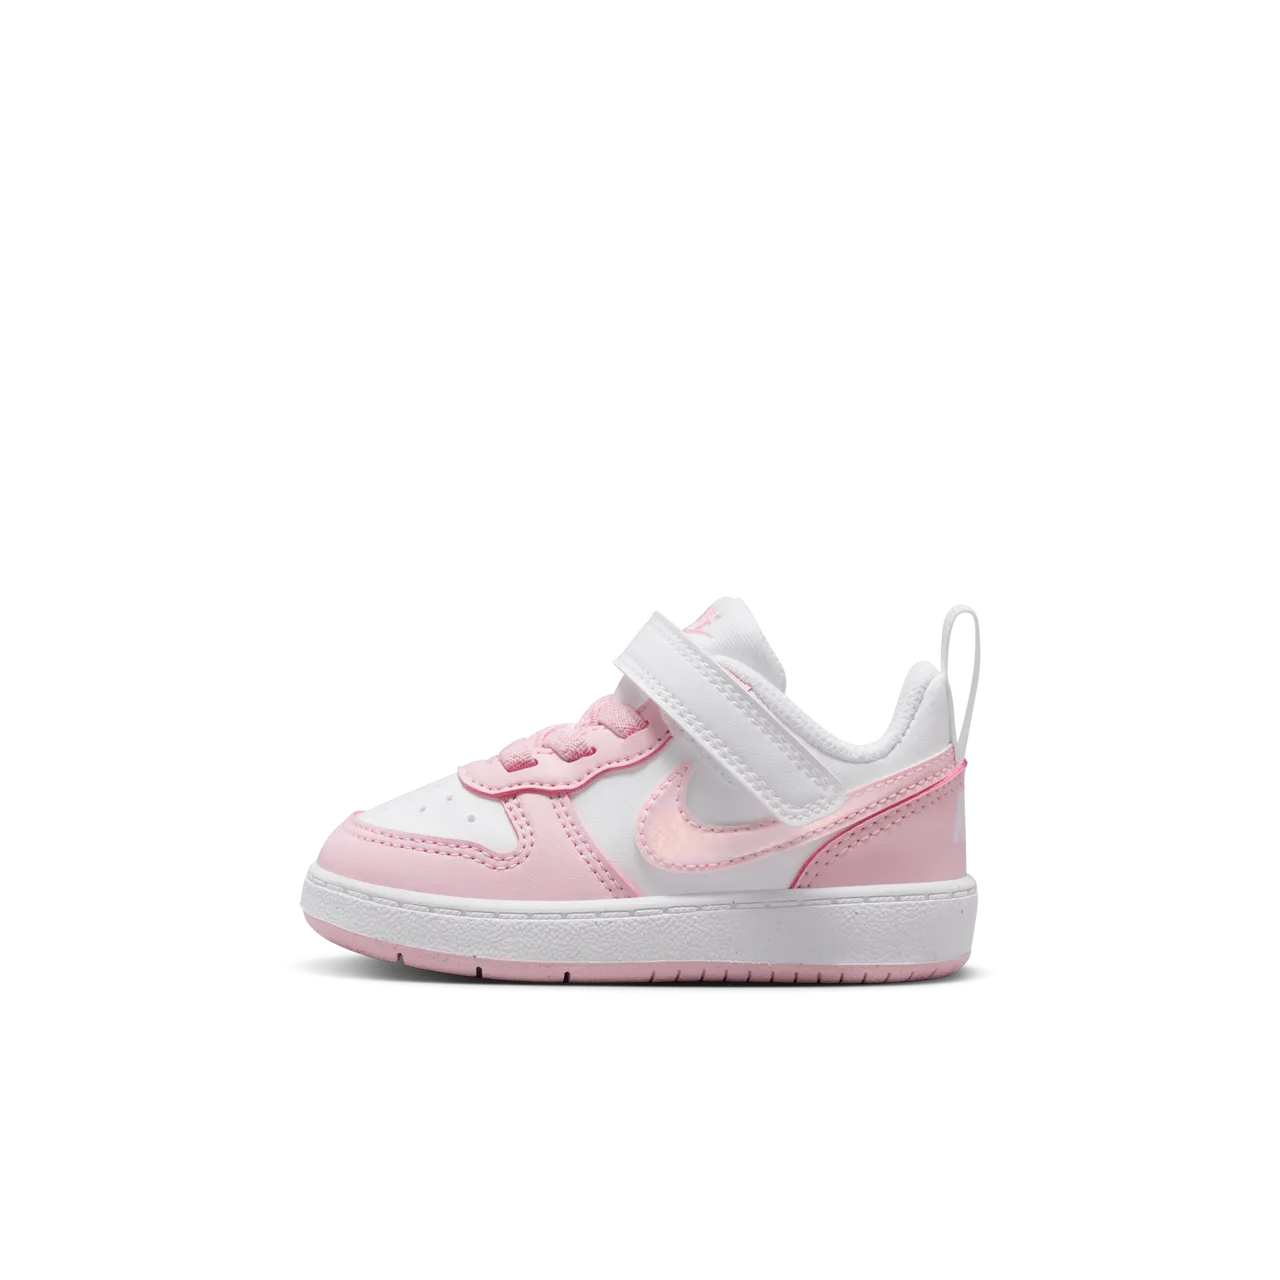 Nike Court Borough Low Recraft Schuh für Babys und Kleinkinder - Weiß